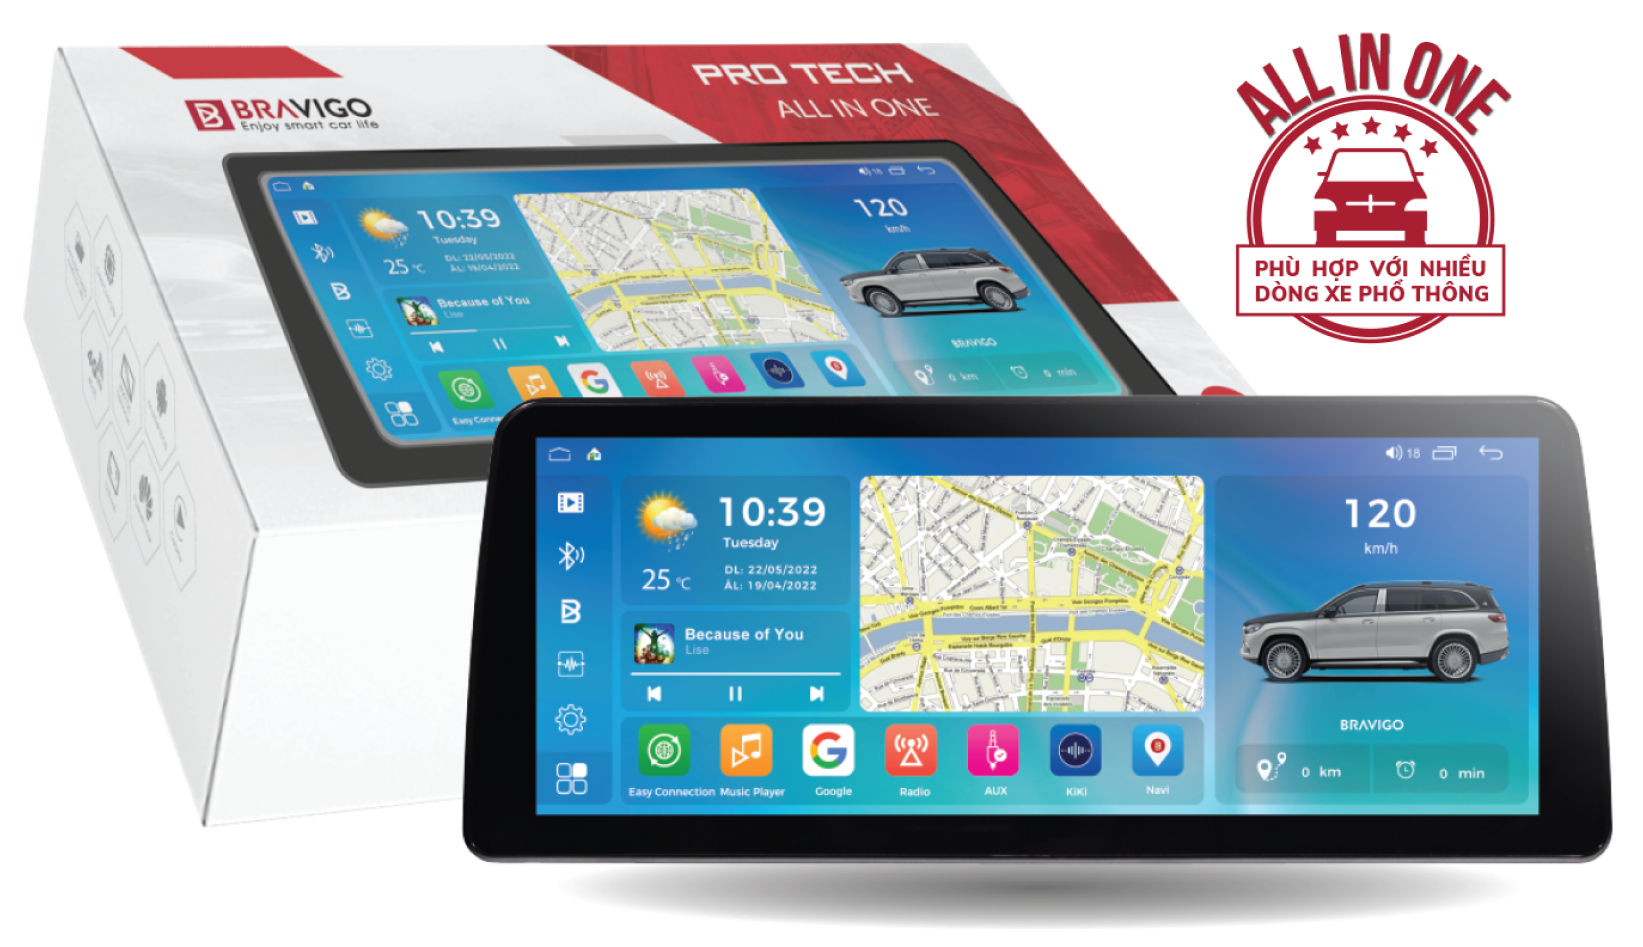 màn hình android ô tô BRAVIGO PRO TECH ALL IN ONE HÌNH VỚI BOX